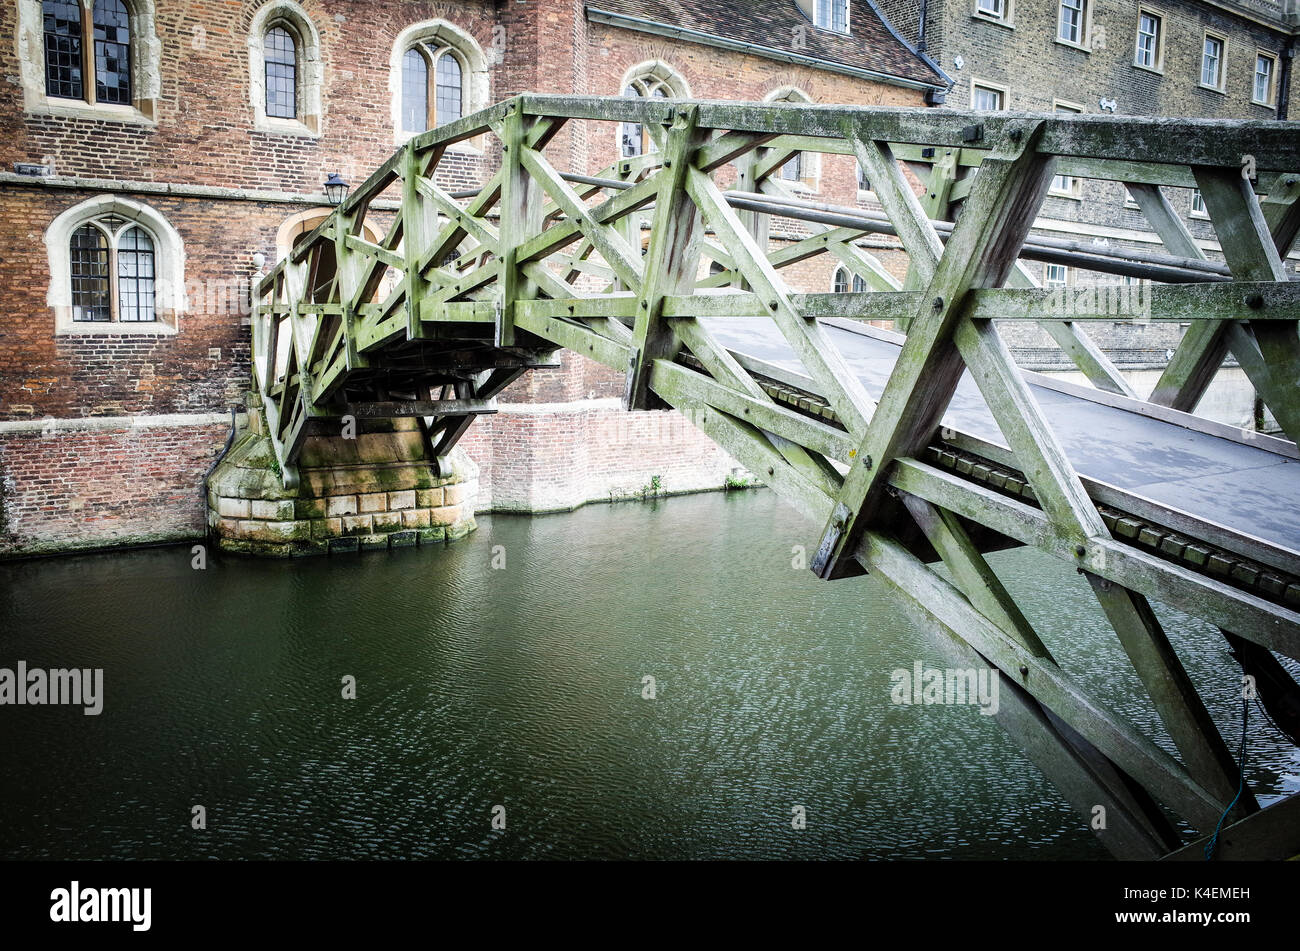 Le pont mathématique dans le Queens College, Université de Cambridge, Royaume-Uni. Conçu par William Etheridge et achevé en 1749, reconstruite en 1866 et 1905 Banque D'Images